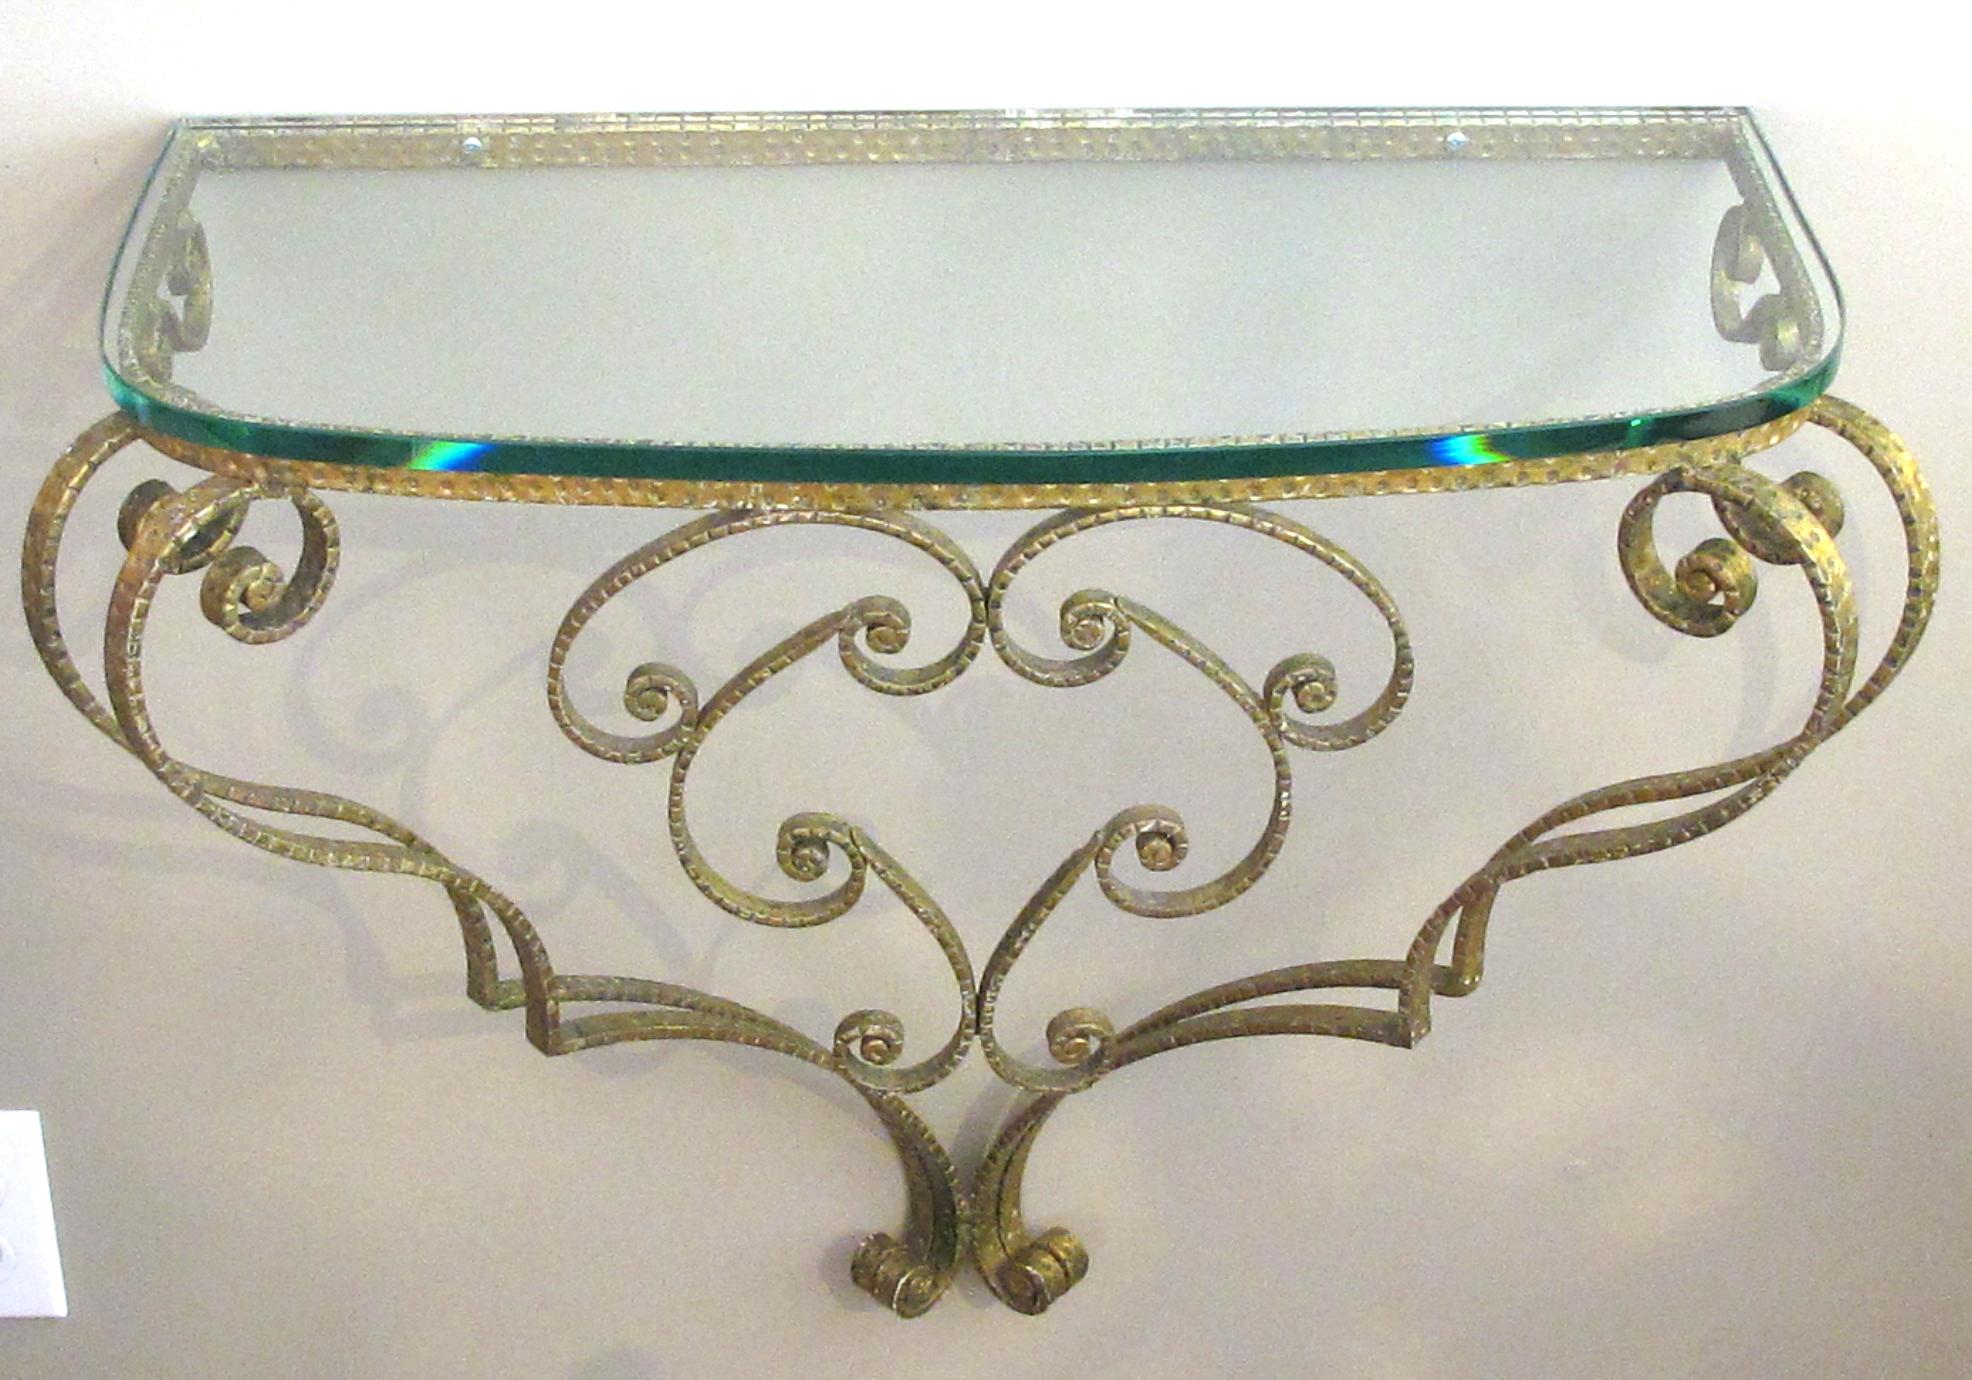 Console et miroir en fer doré de Pier Luigi Colli (1895-1968) des années 1940 ; grand design italien, le miroir ovale avec un cadre en fer doré à volutes, au-dessus d'une console murale démilune avec un plateau en verre au-dessus d'une base à